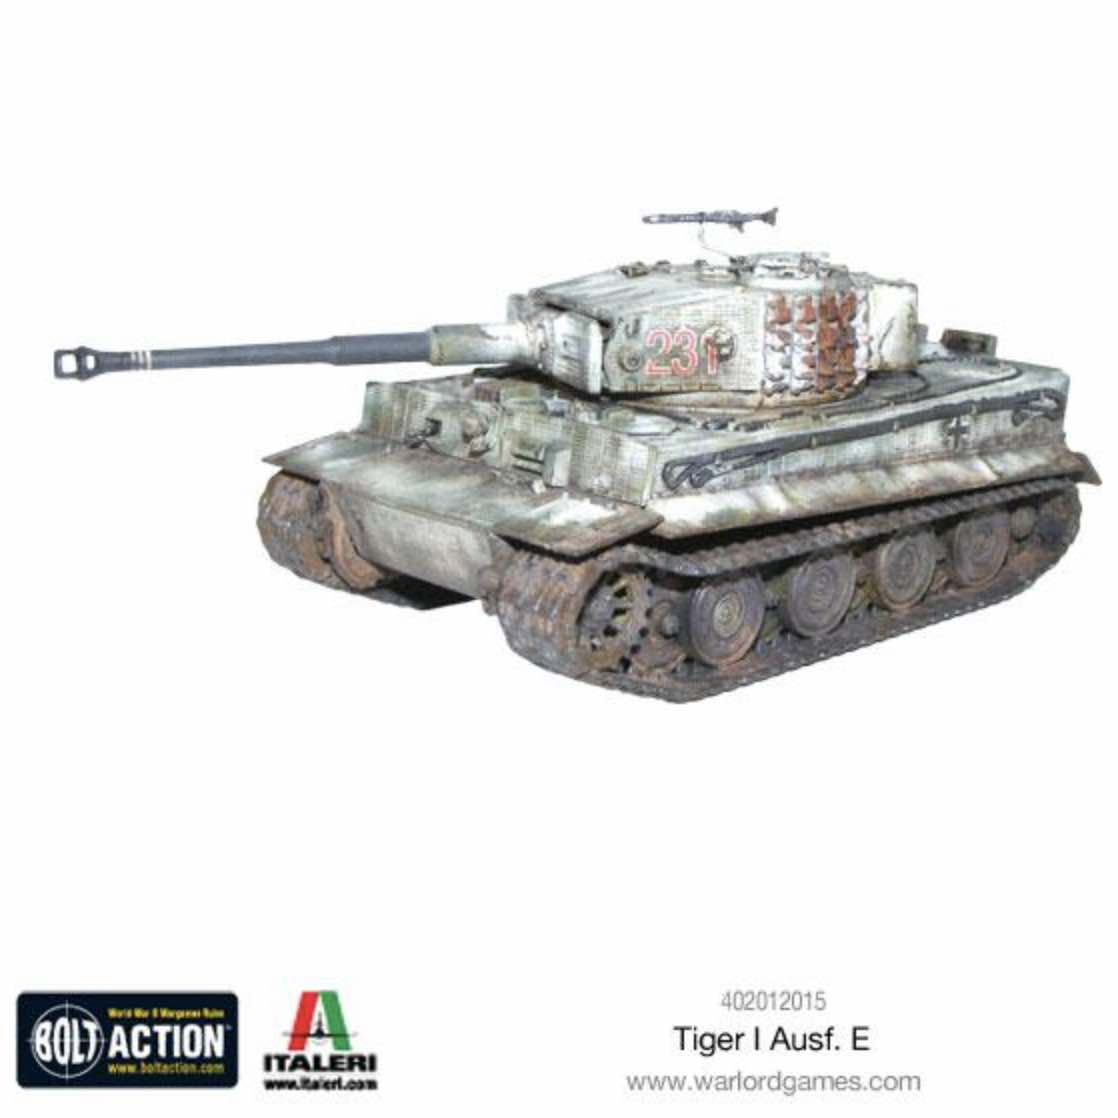 402012015 tiger I ausf E model_2